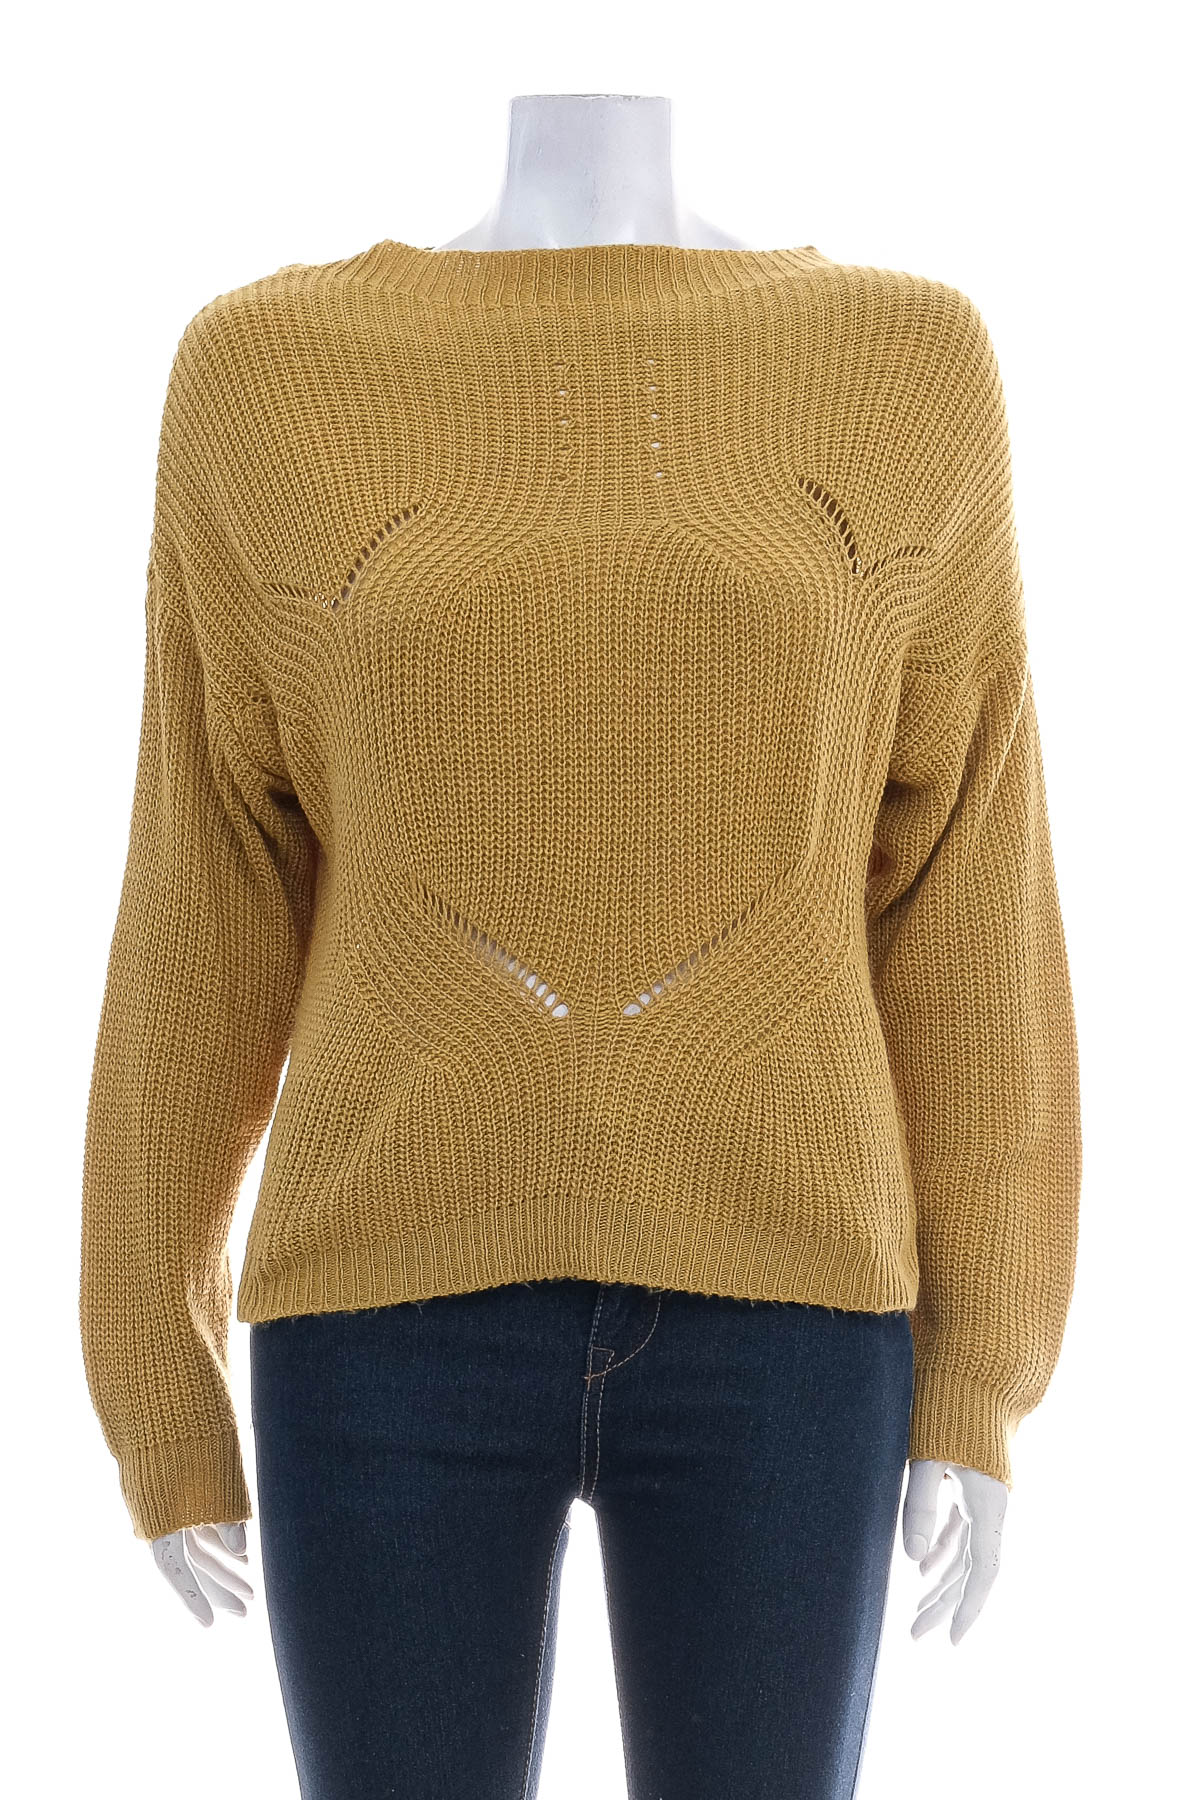 Women's sweater - HAILYS - 0